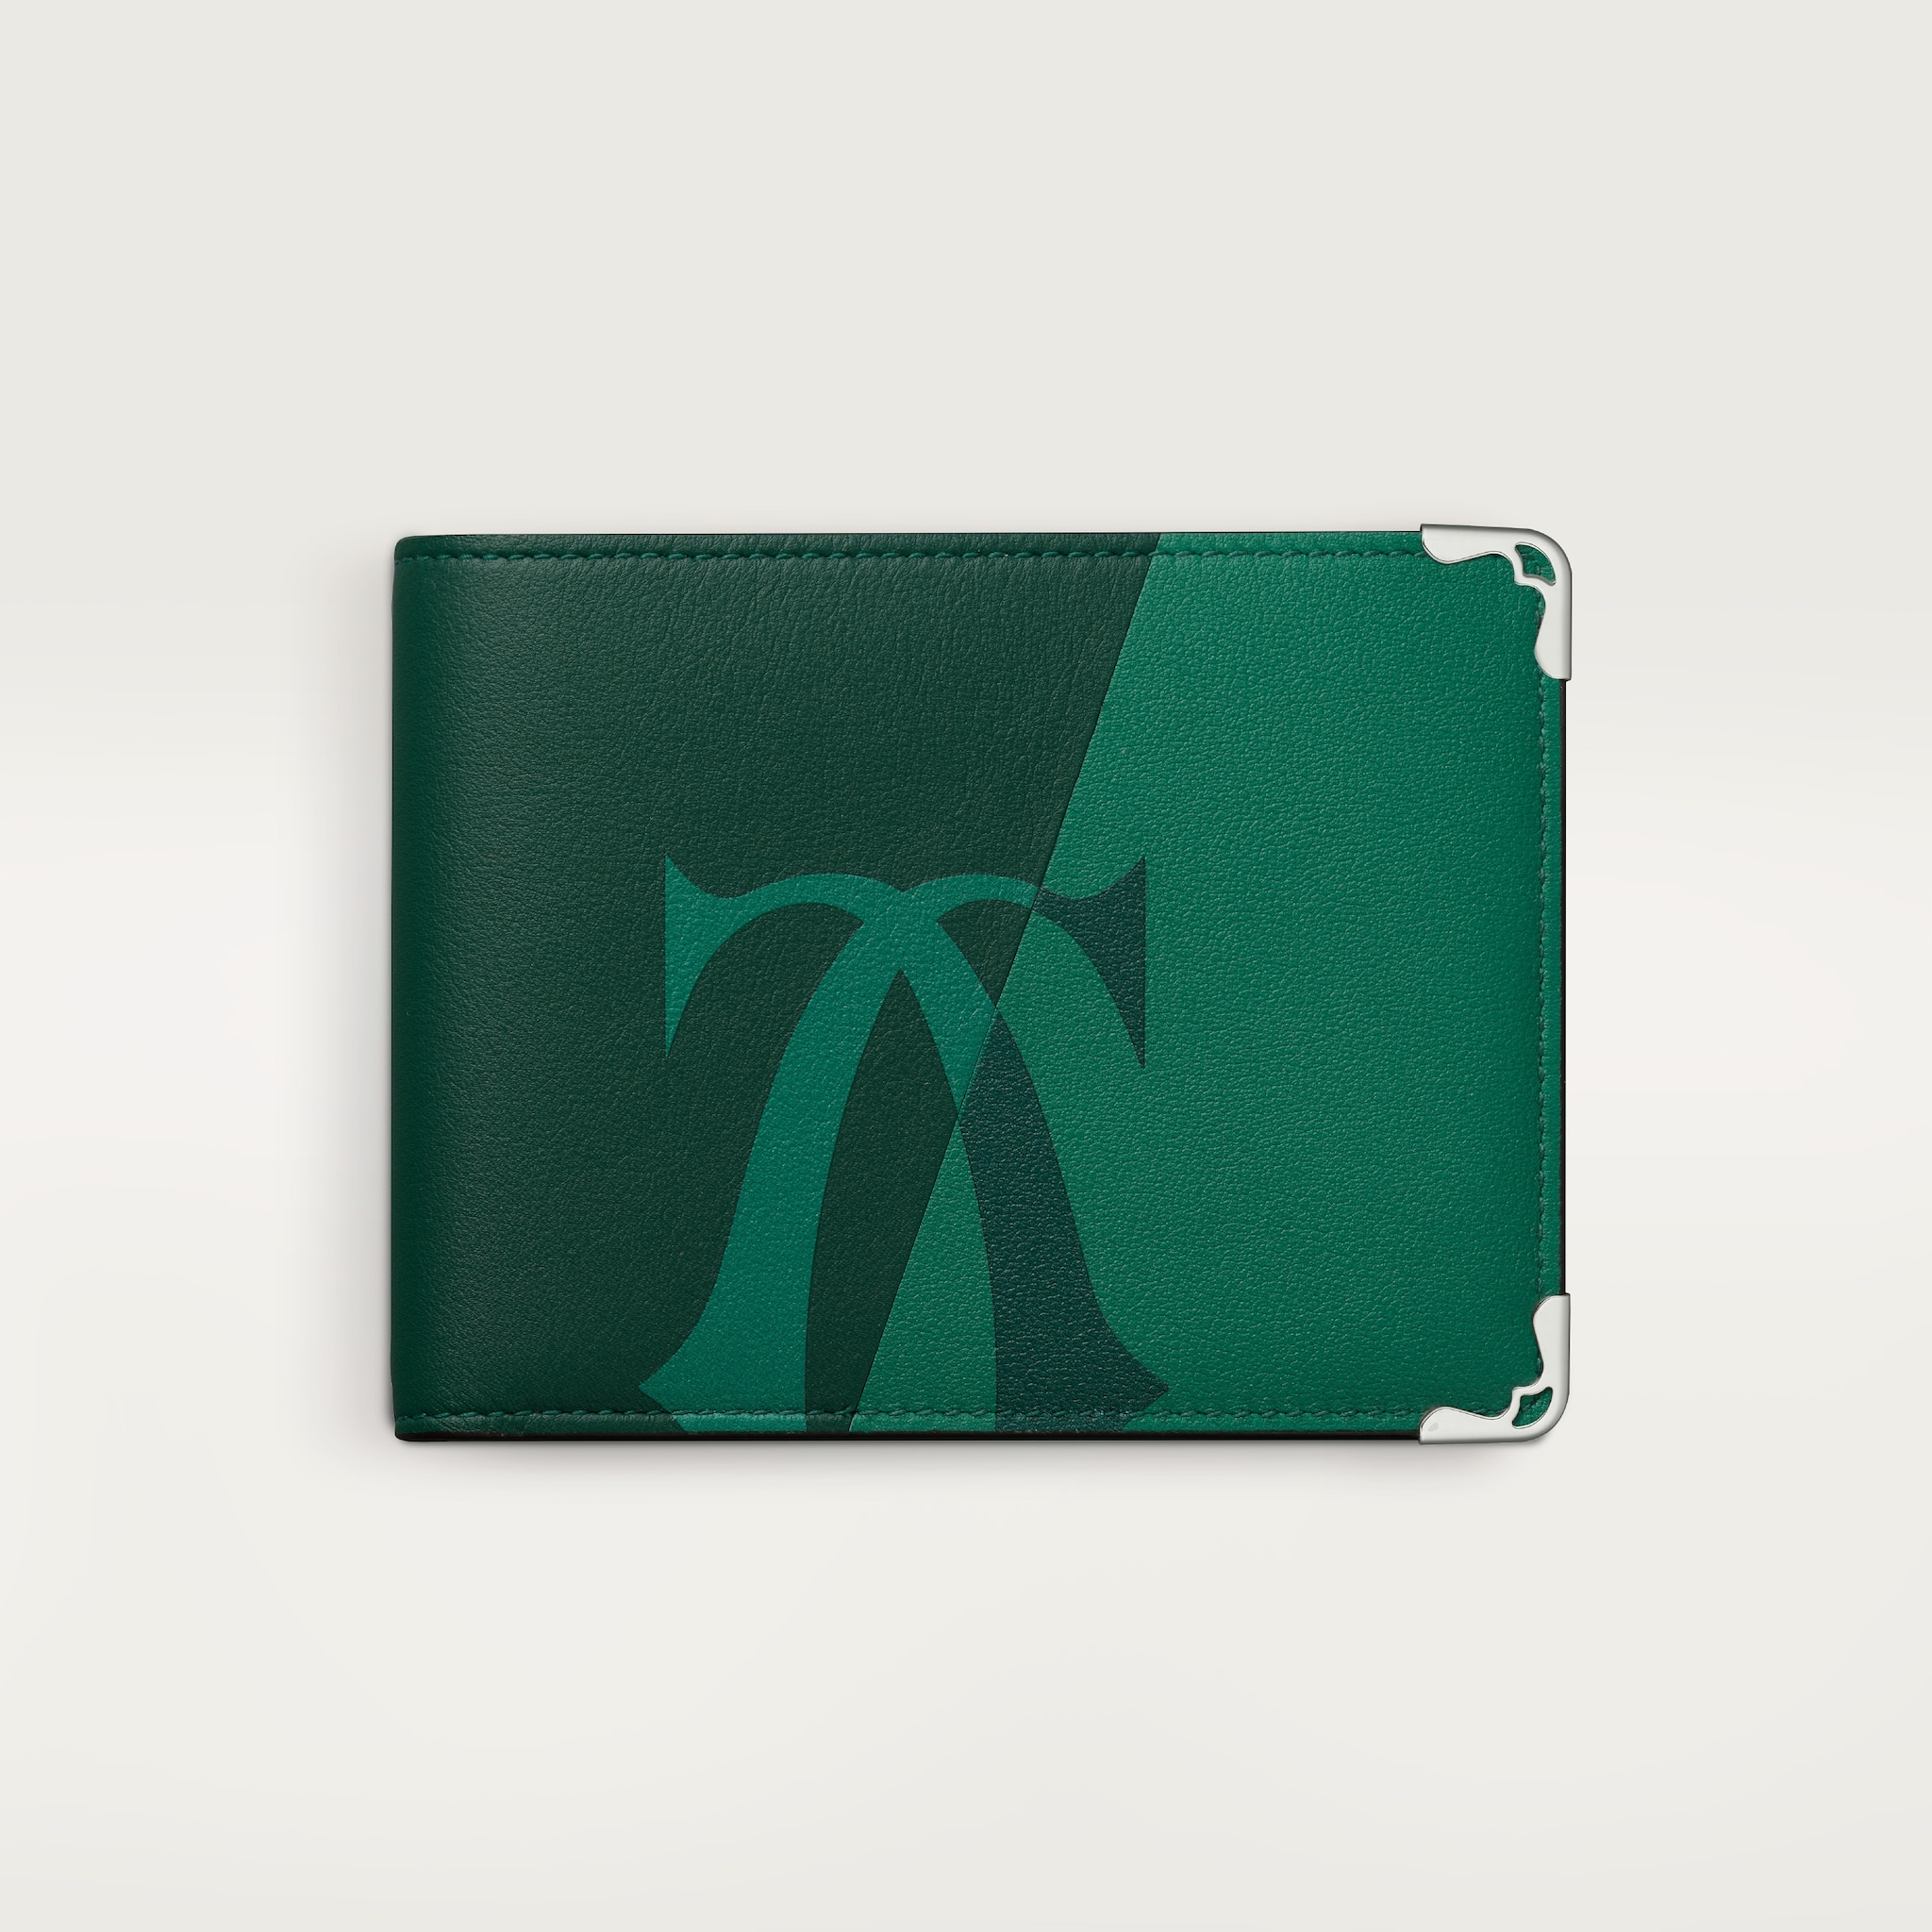 Six-credit card compact wallet, Must de CartierXL Logo smooth green calfskin, palladium finish